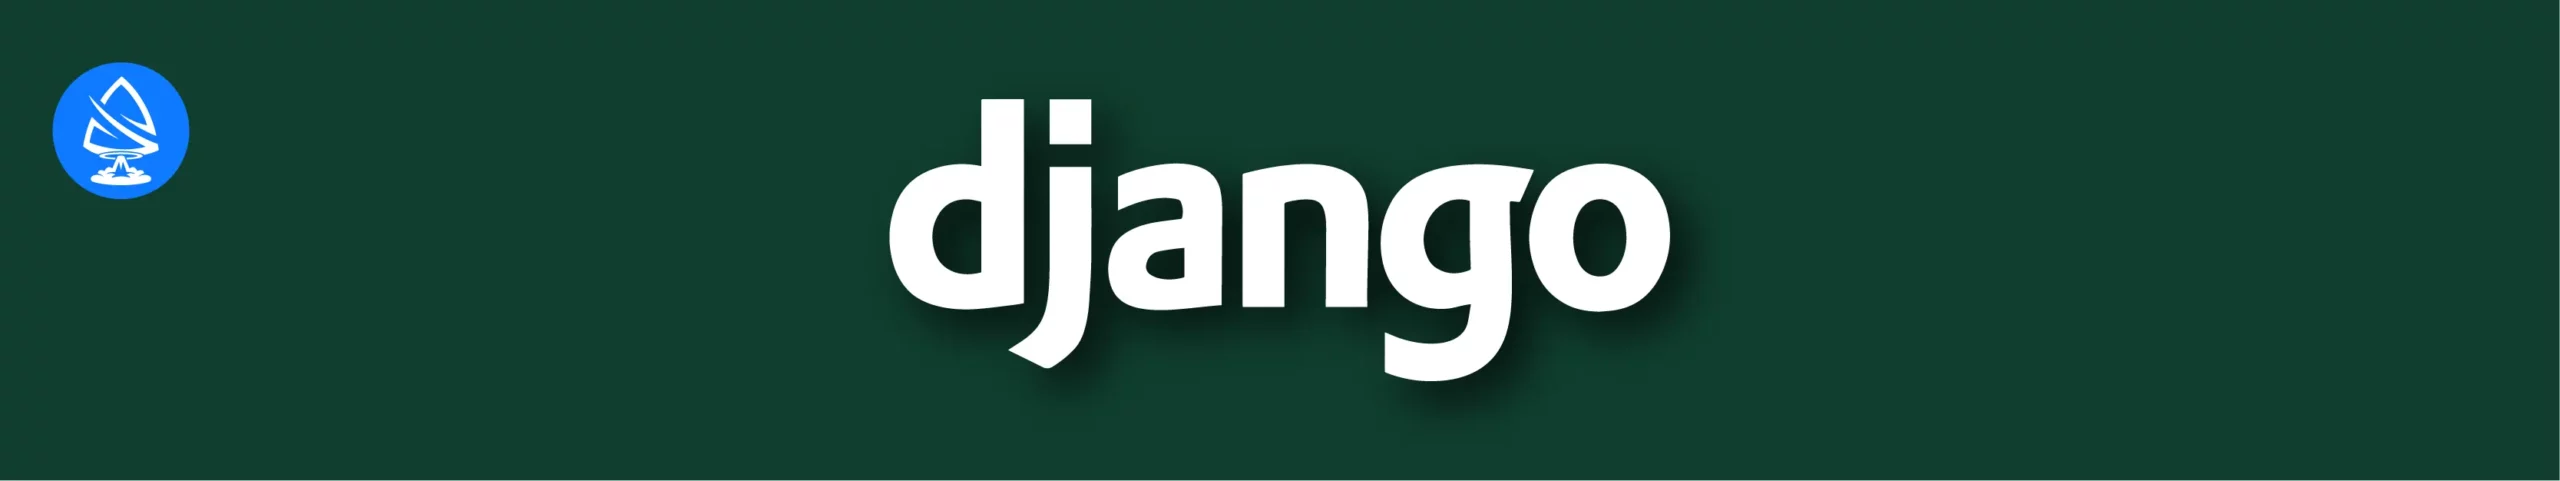 Django 